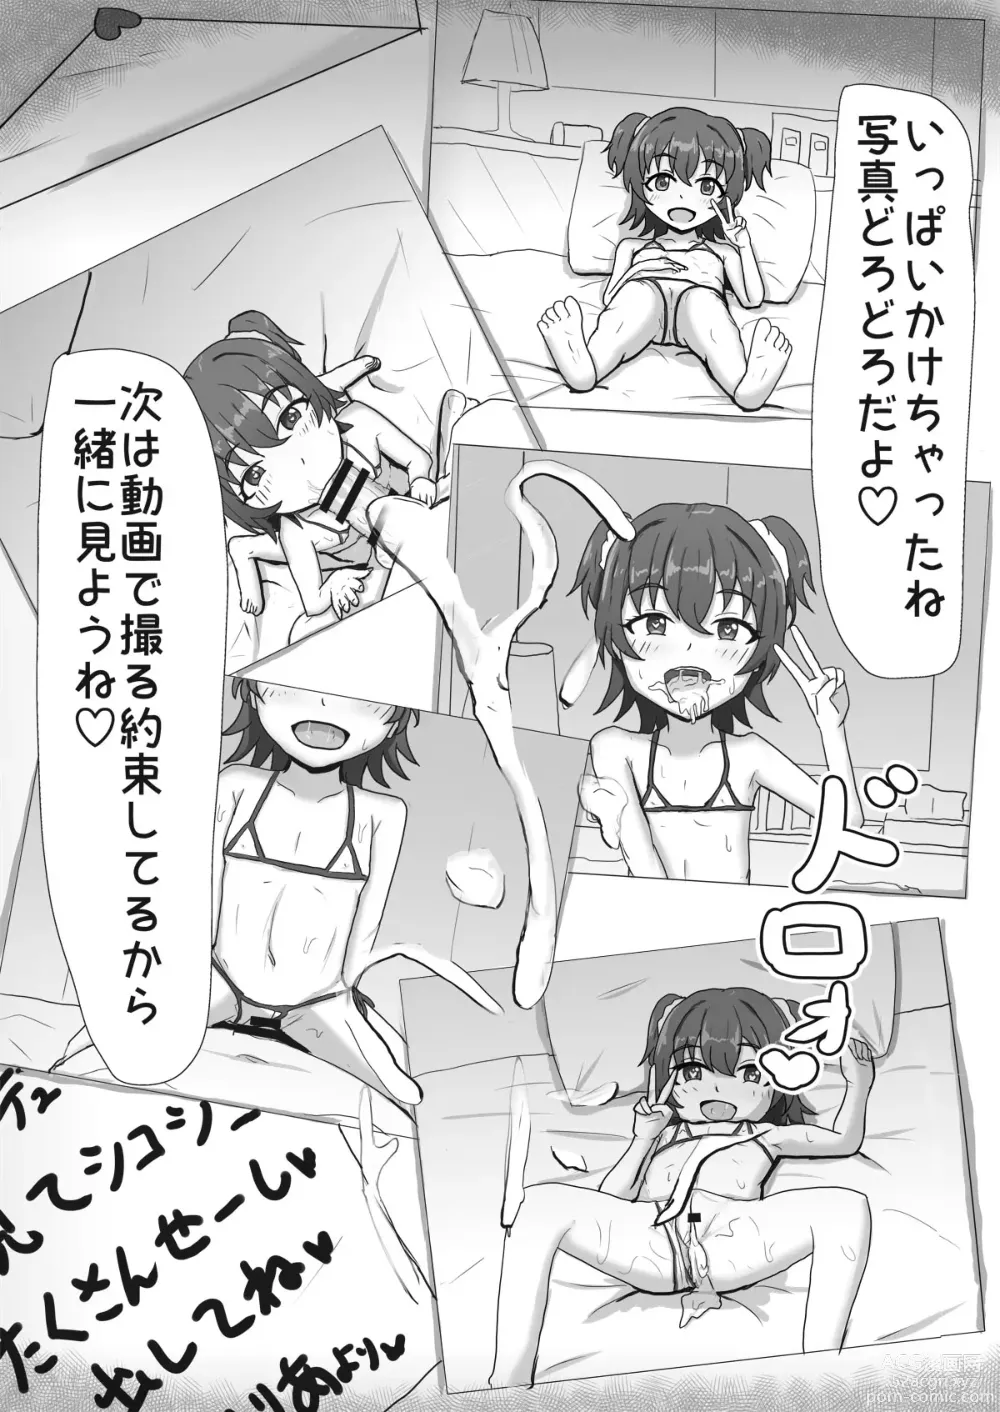 Page 7 of doujinshi Miria-chan NTR Manga